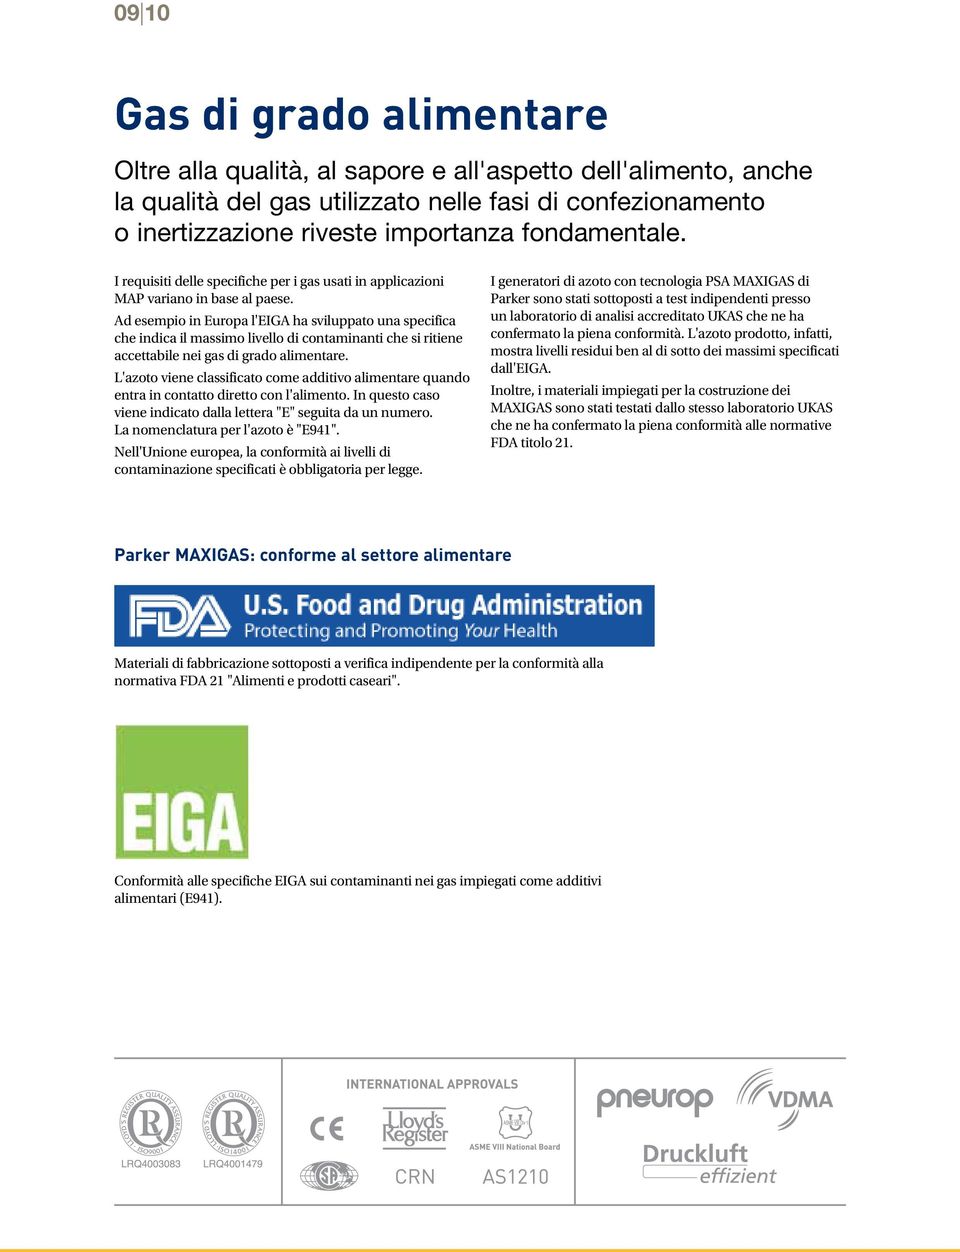 Ad esempio in Europa l'eiga ha sviluppato una specifica che indica il massimo livello di contaminanti che si ritiene accettabile nei gas di grado alimentare.